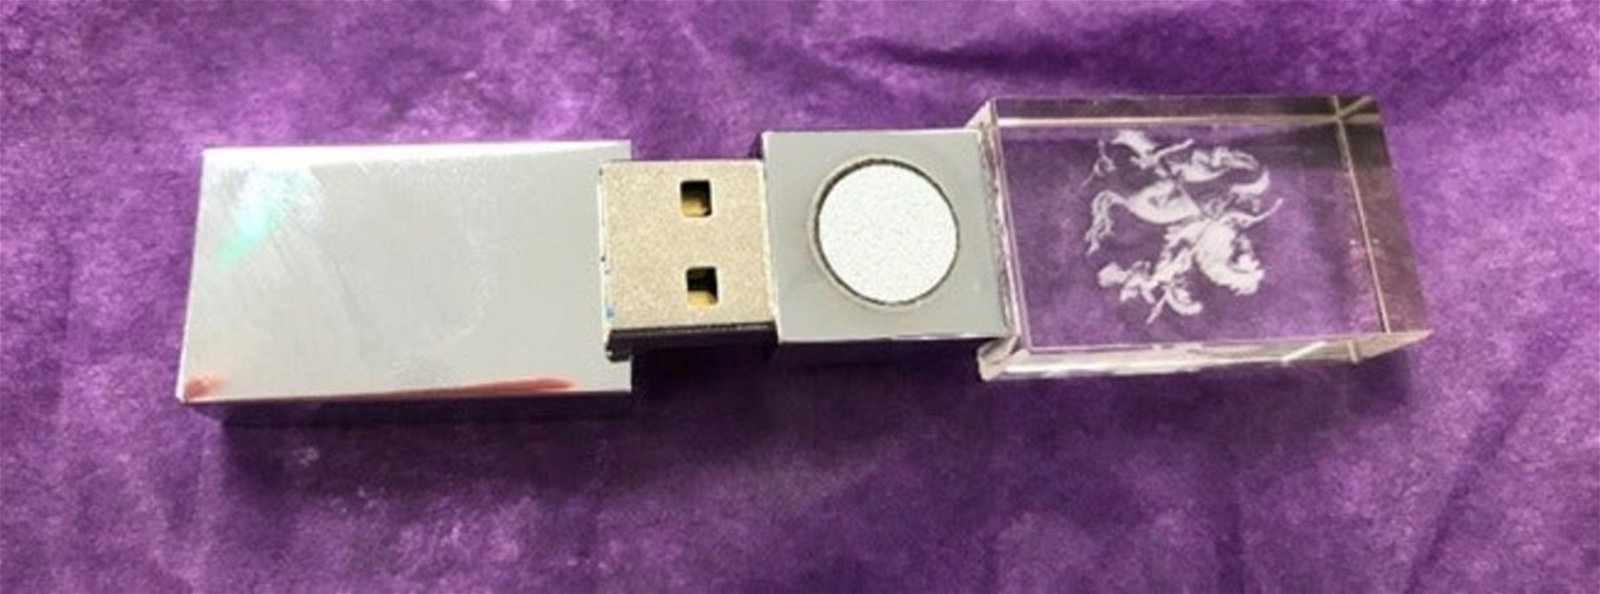 Así de fácil es estafar a los "conspiranoicos" del 5G: una memoria USB de 128MB con supuestas propiedades milagrosas por 300 euros